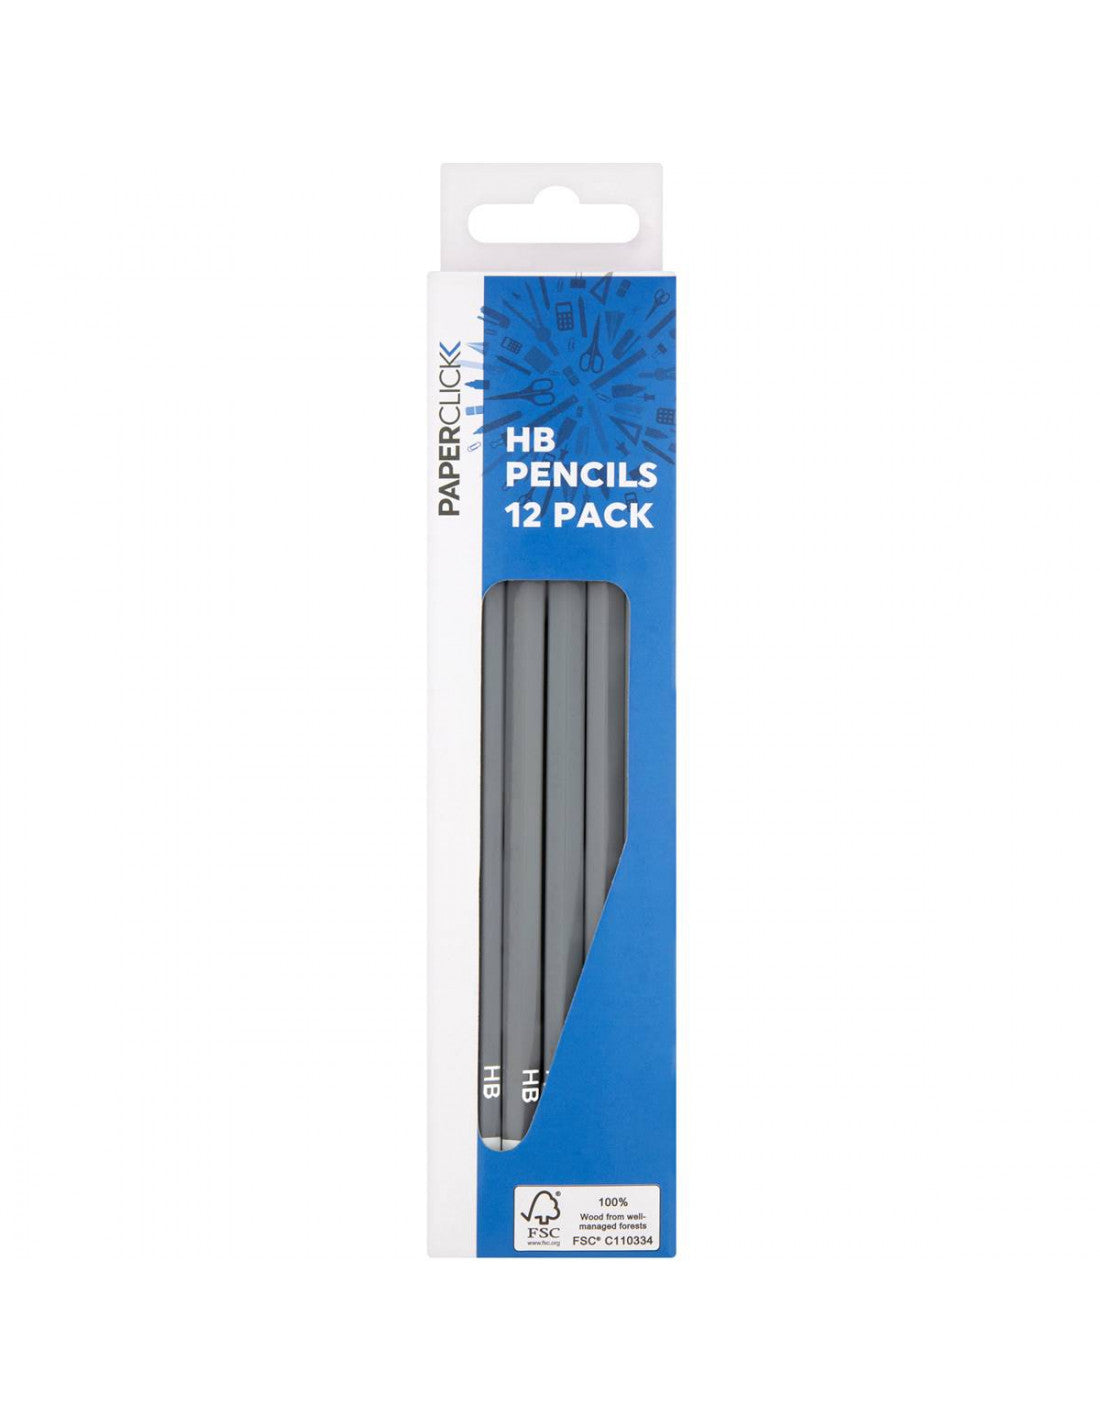 Paperclick HB Pencils 12pk